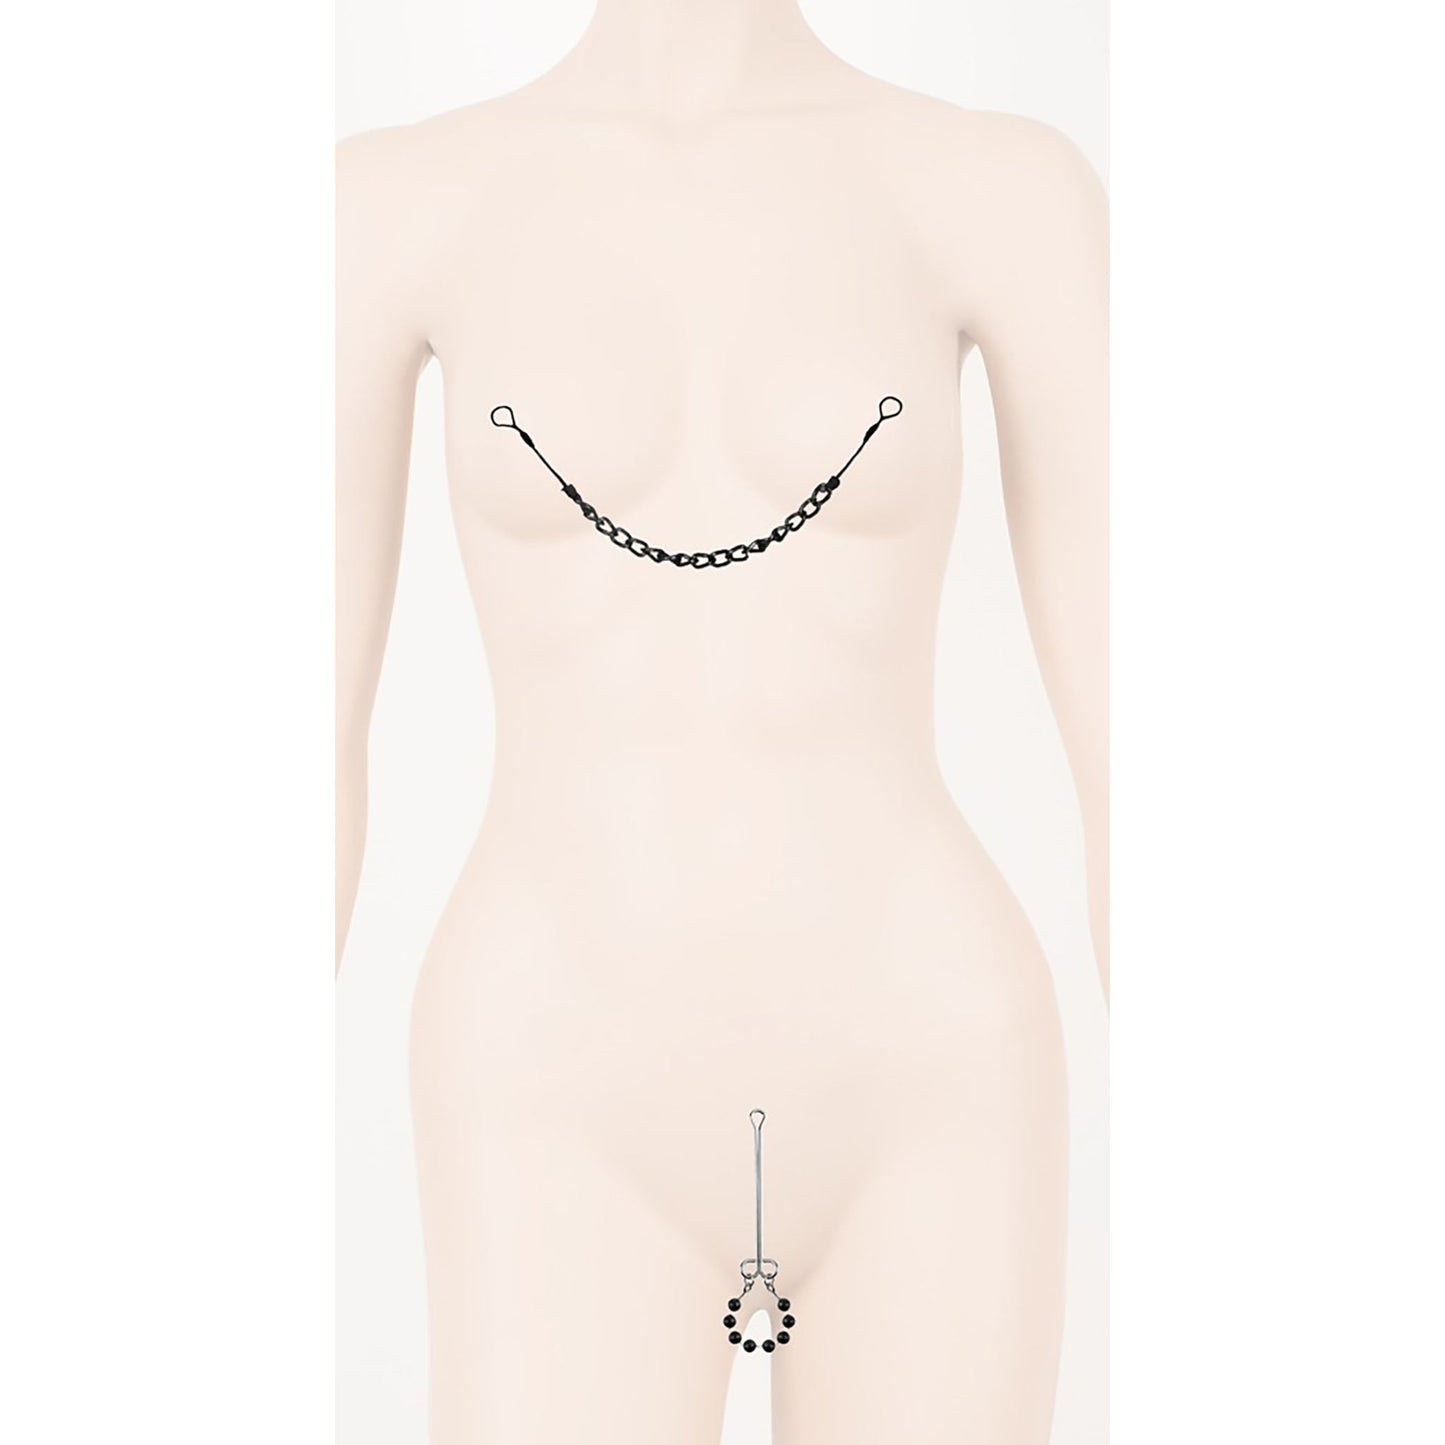 Nipple and Clit Jewelry Intimschmuck - Nippelkette und Klitorisspange an einer Puppe